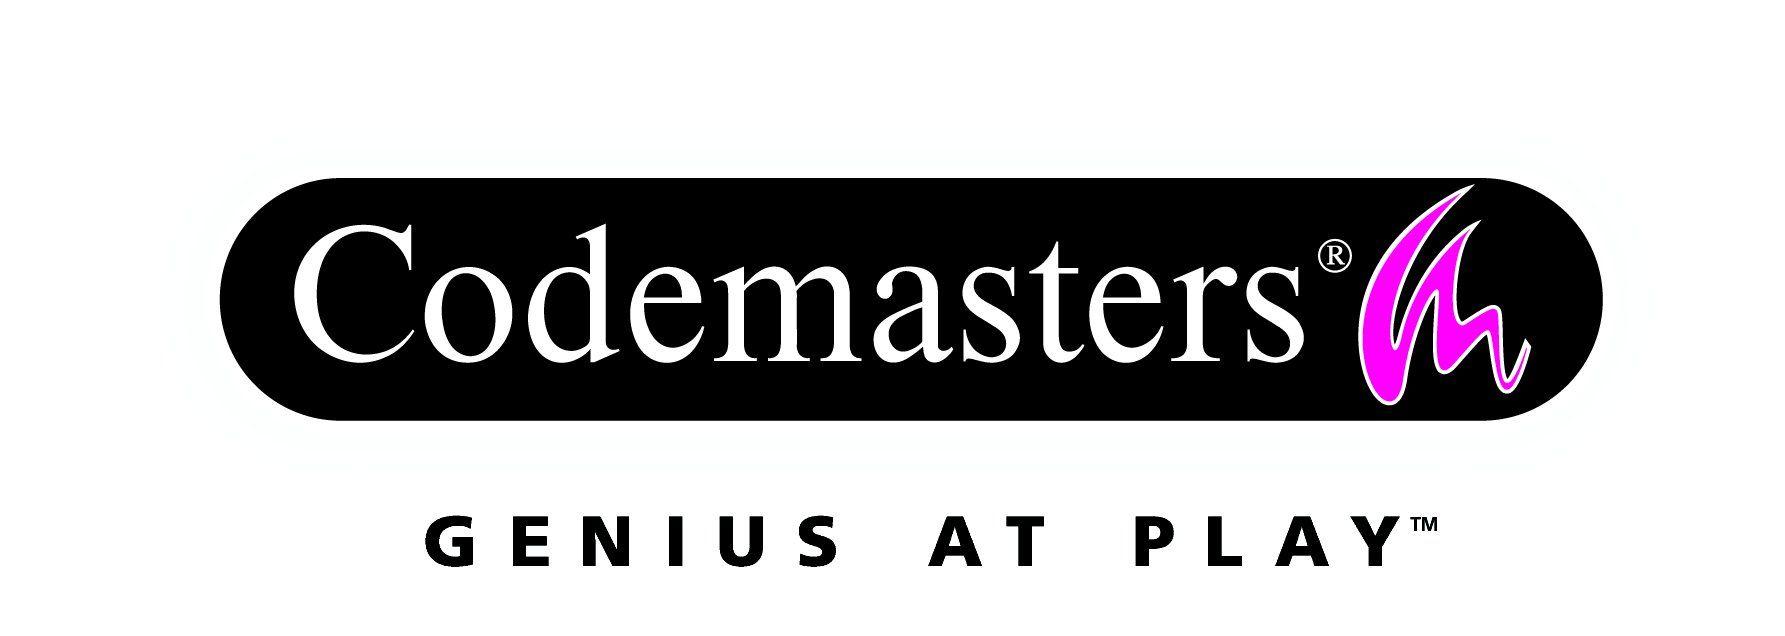 Codemasters Logo - Codemasters (Company)